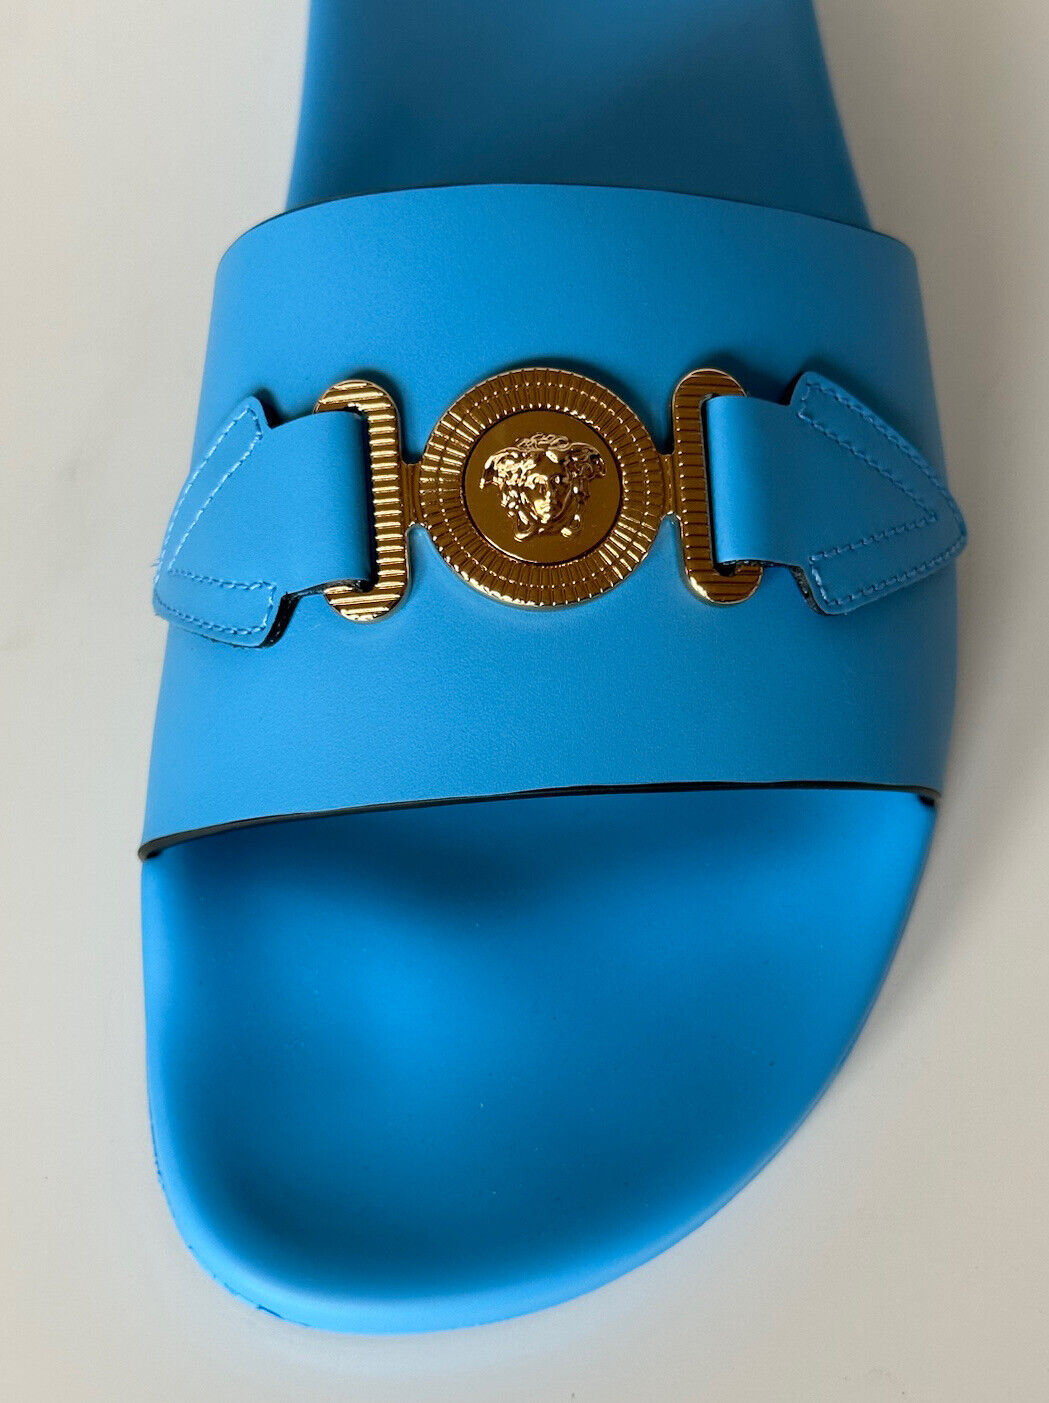 NIB $650 Versace Gold Medusa Leather/Rubber Sandals Blue 14 US (47) 1004983 IT